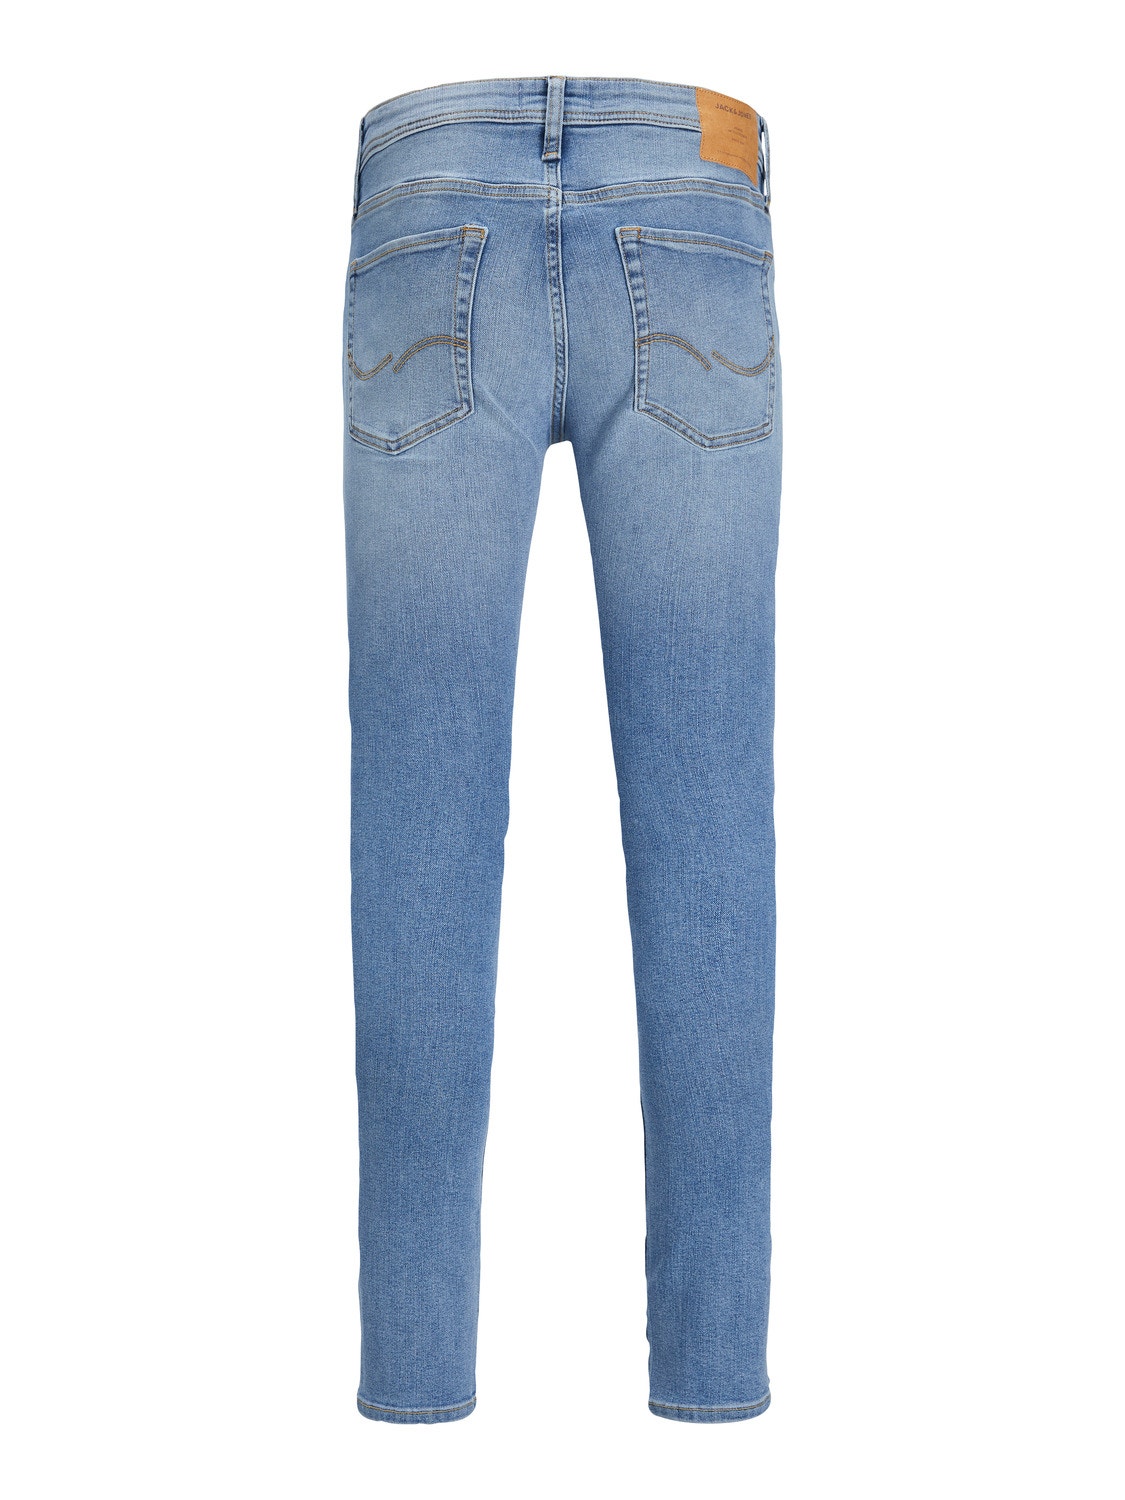 Jack & Jones JJILIAM JJORIGINAL MF 770 Jeans skinny fit -Blue Denim - 12237359